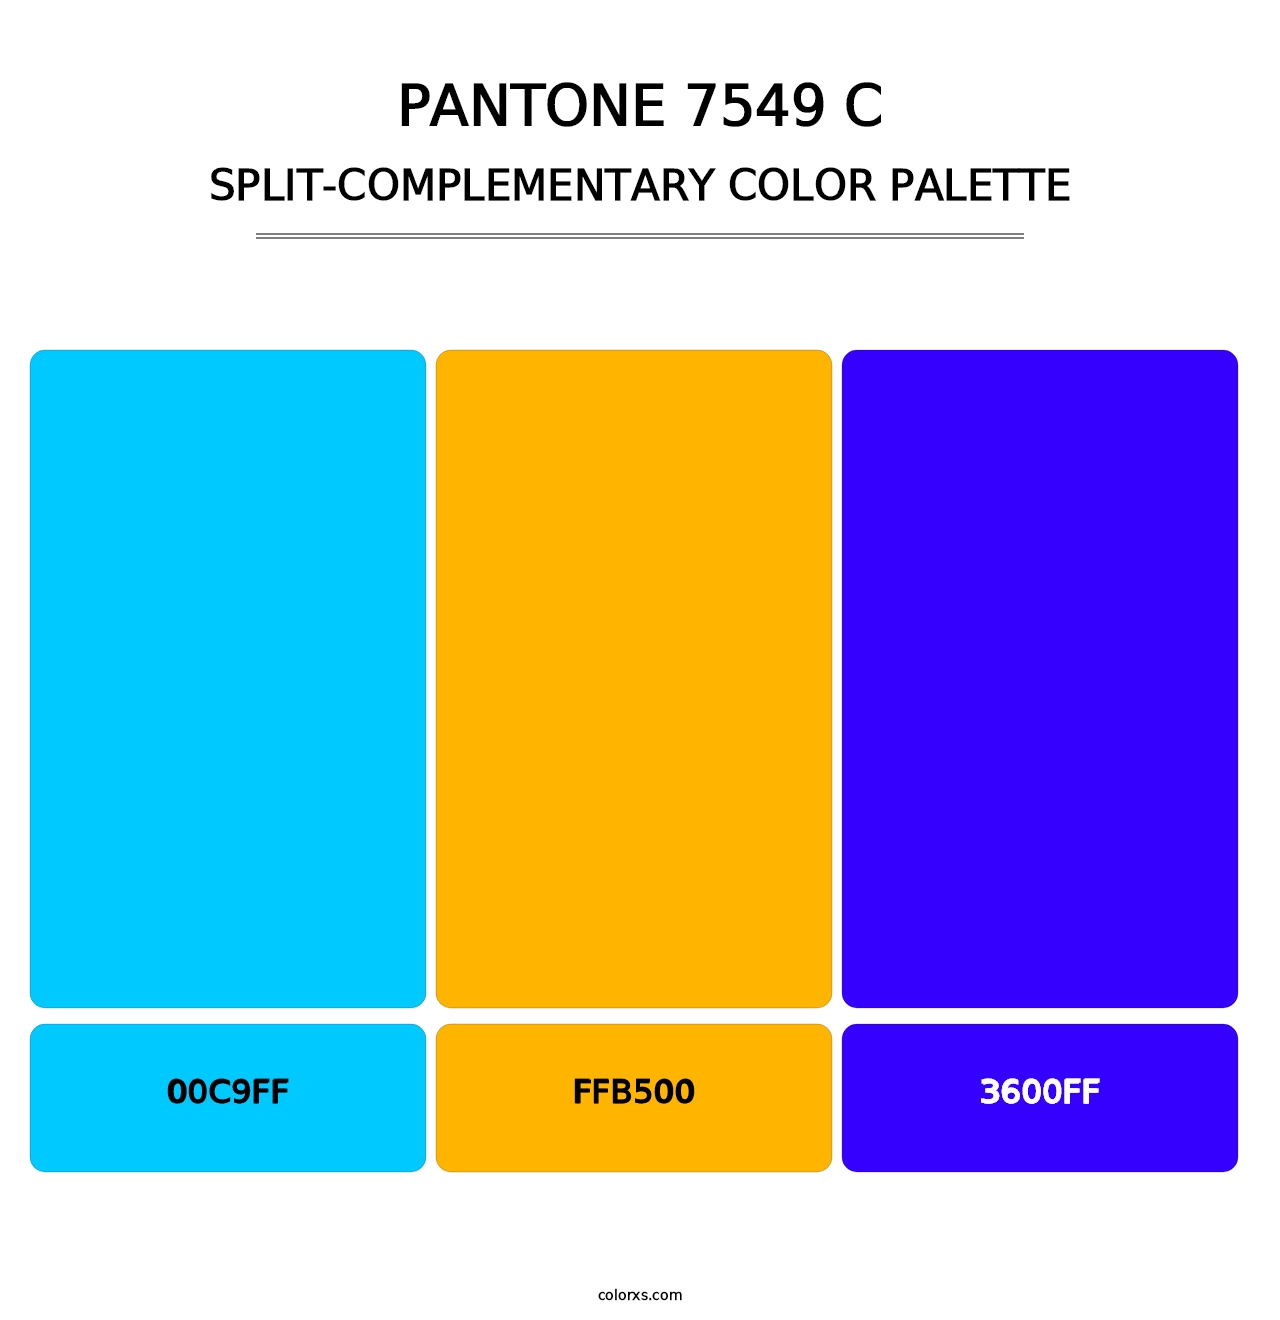 PANTONE 7549 C - Split-Complementary Color Palette